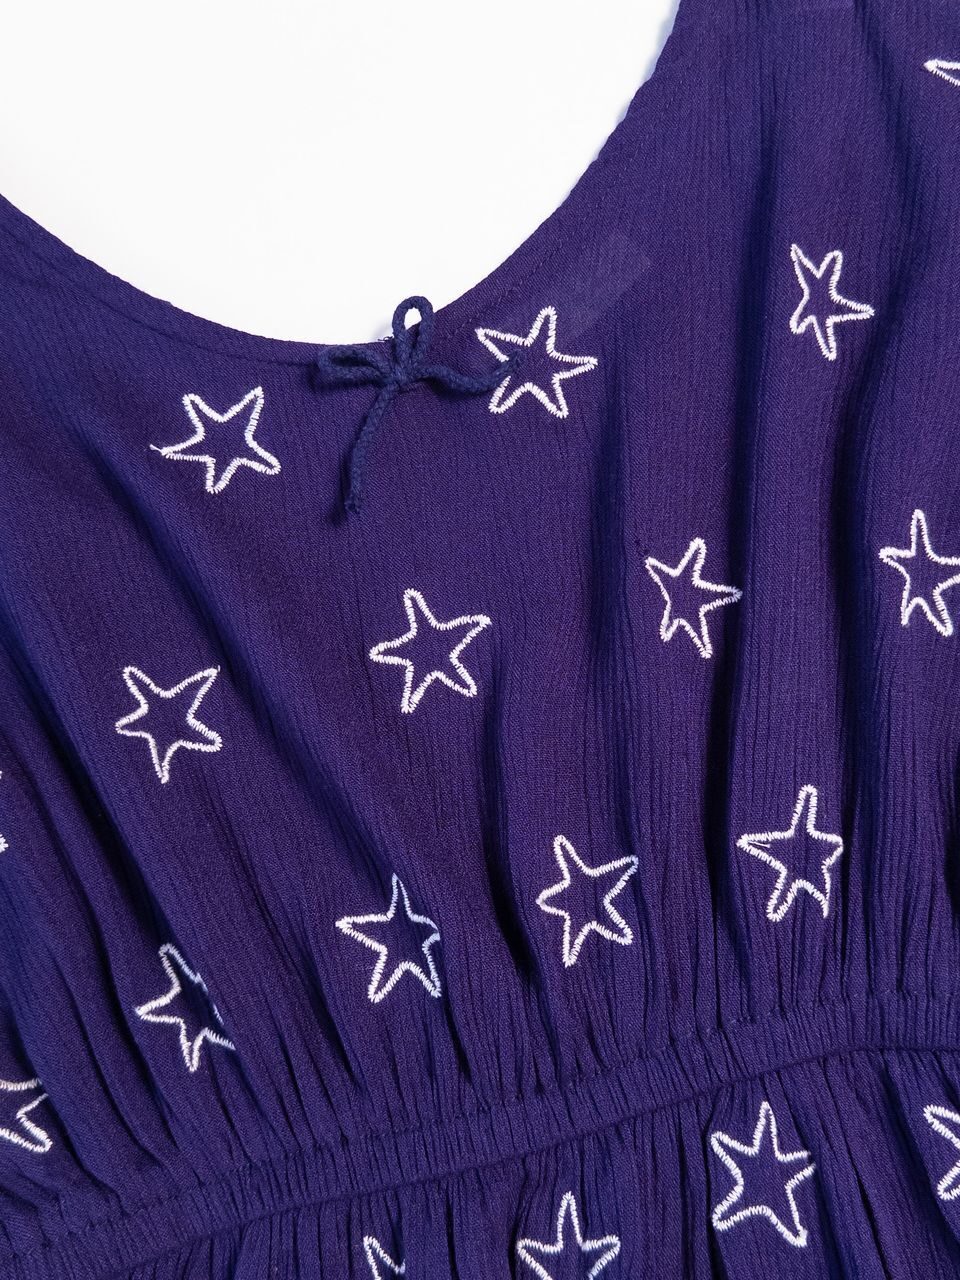 Платье-туника в поясе резинка цвет фиолетовый принт Звезды на рост 116 см 5-6 лет Primark